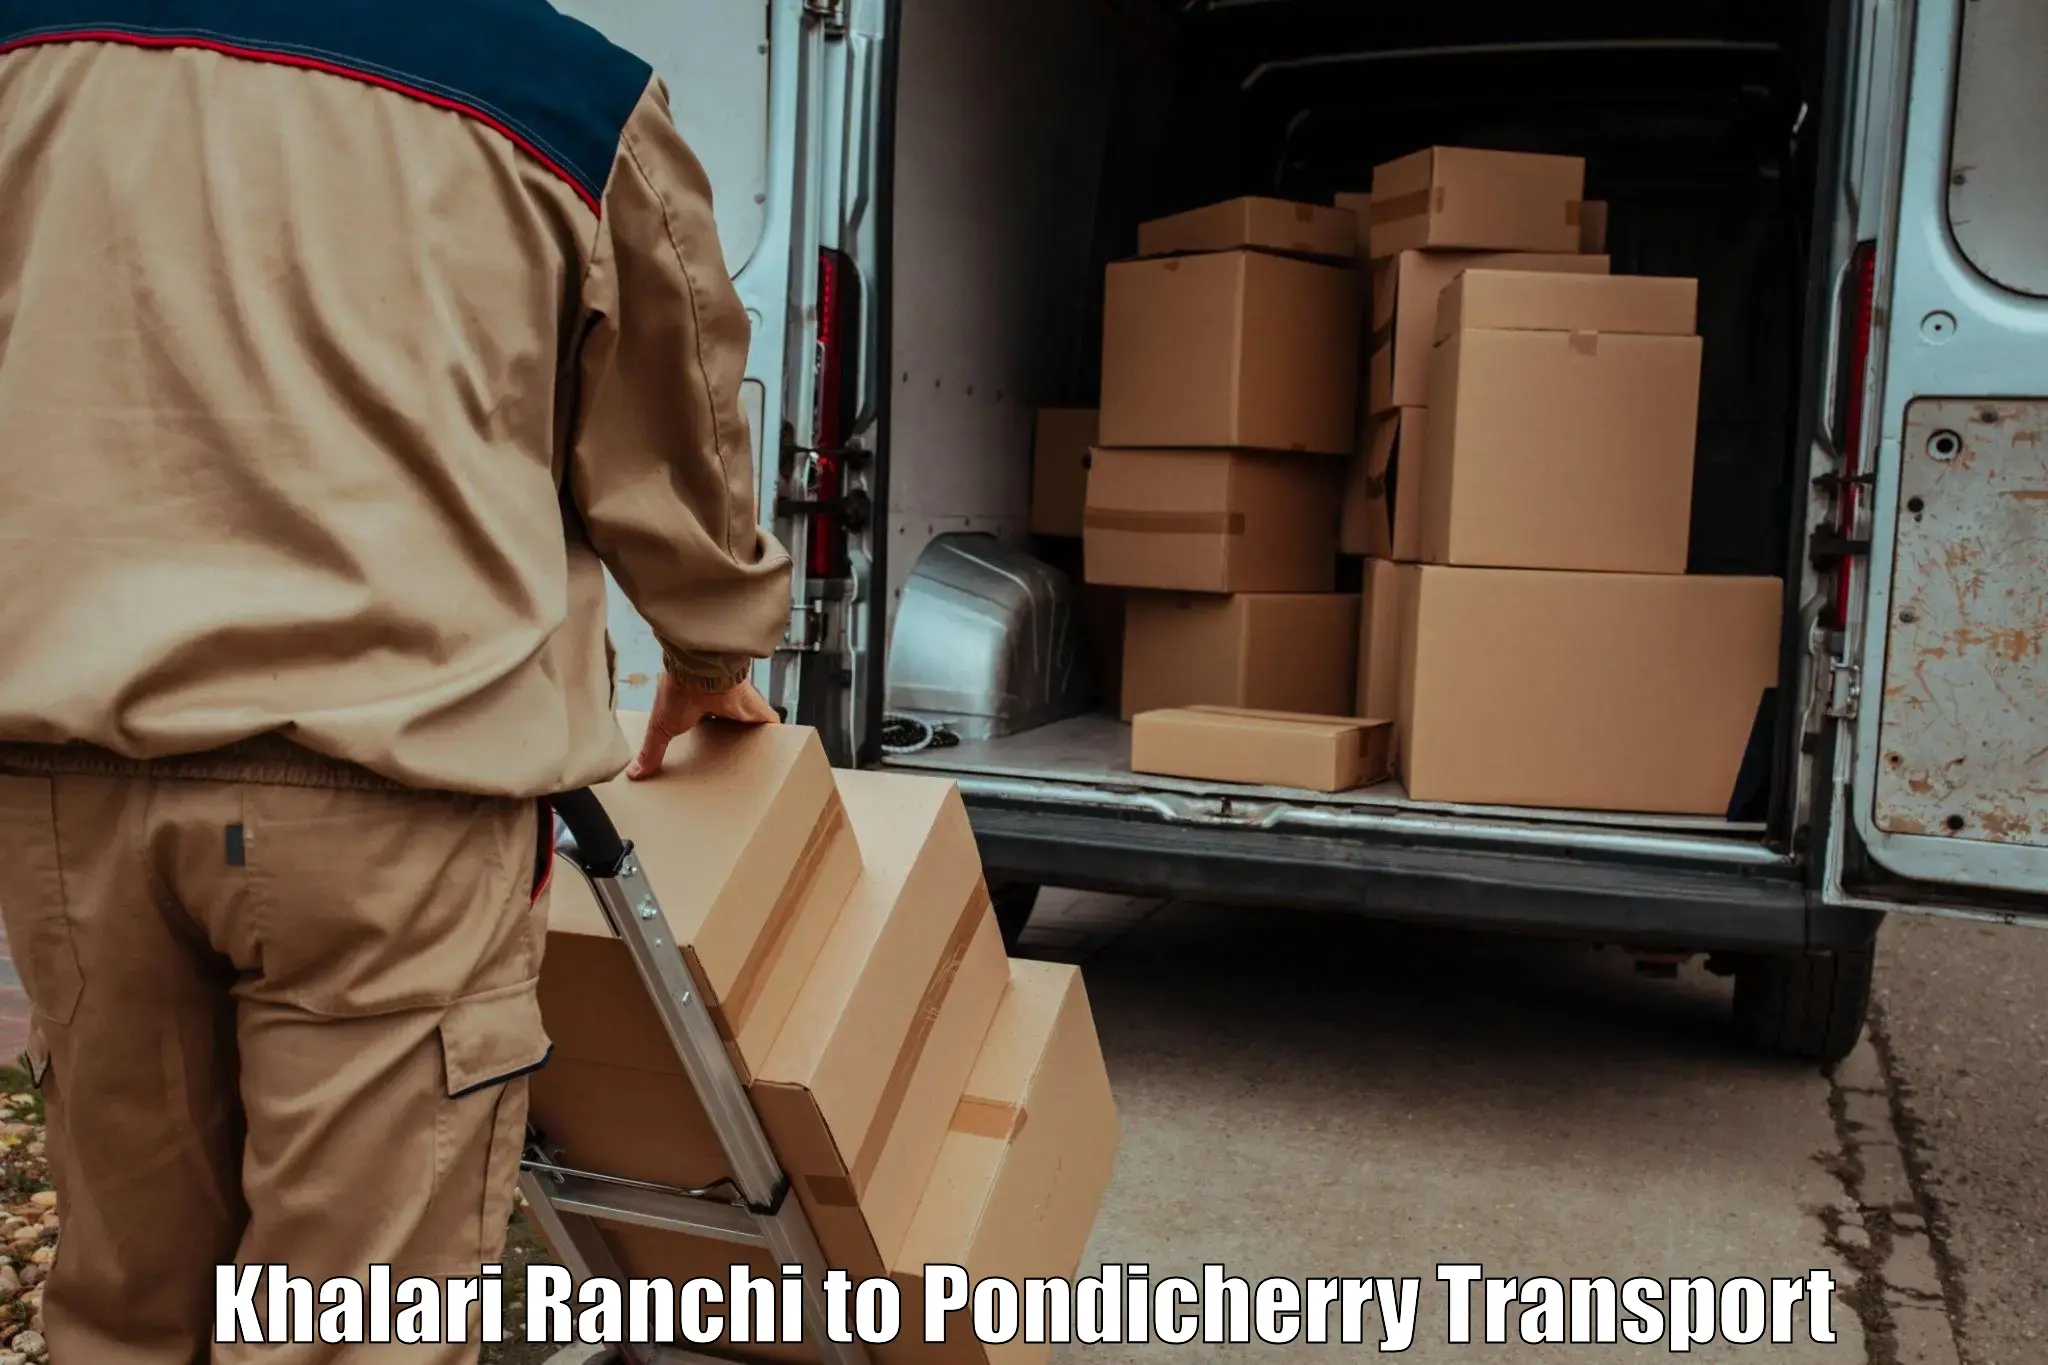 Vehicle transport services in Khalari Ranchi to Karaikal